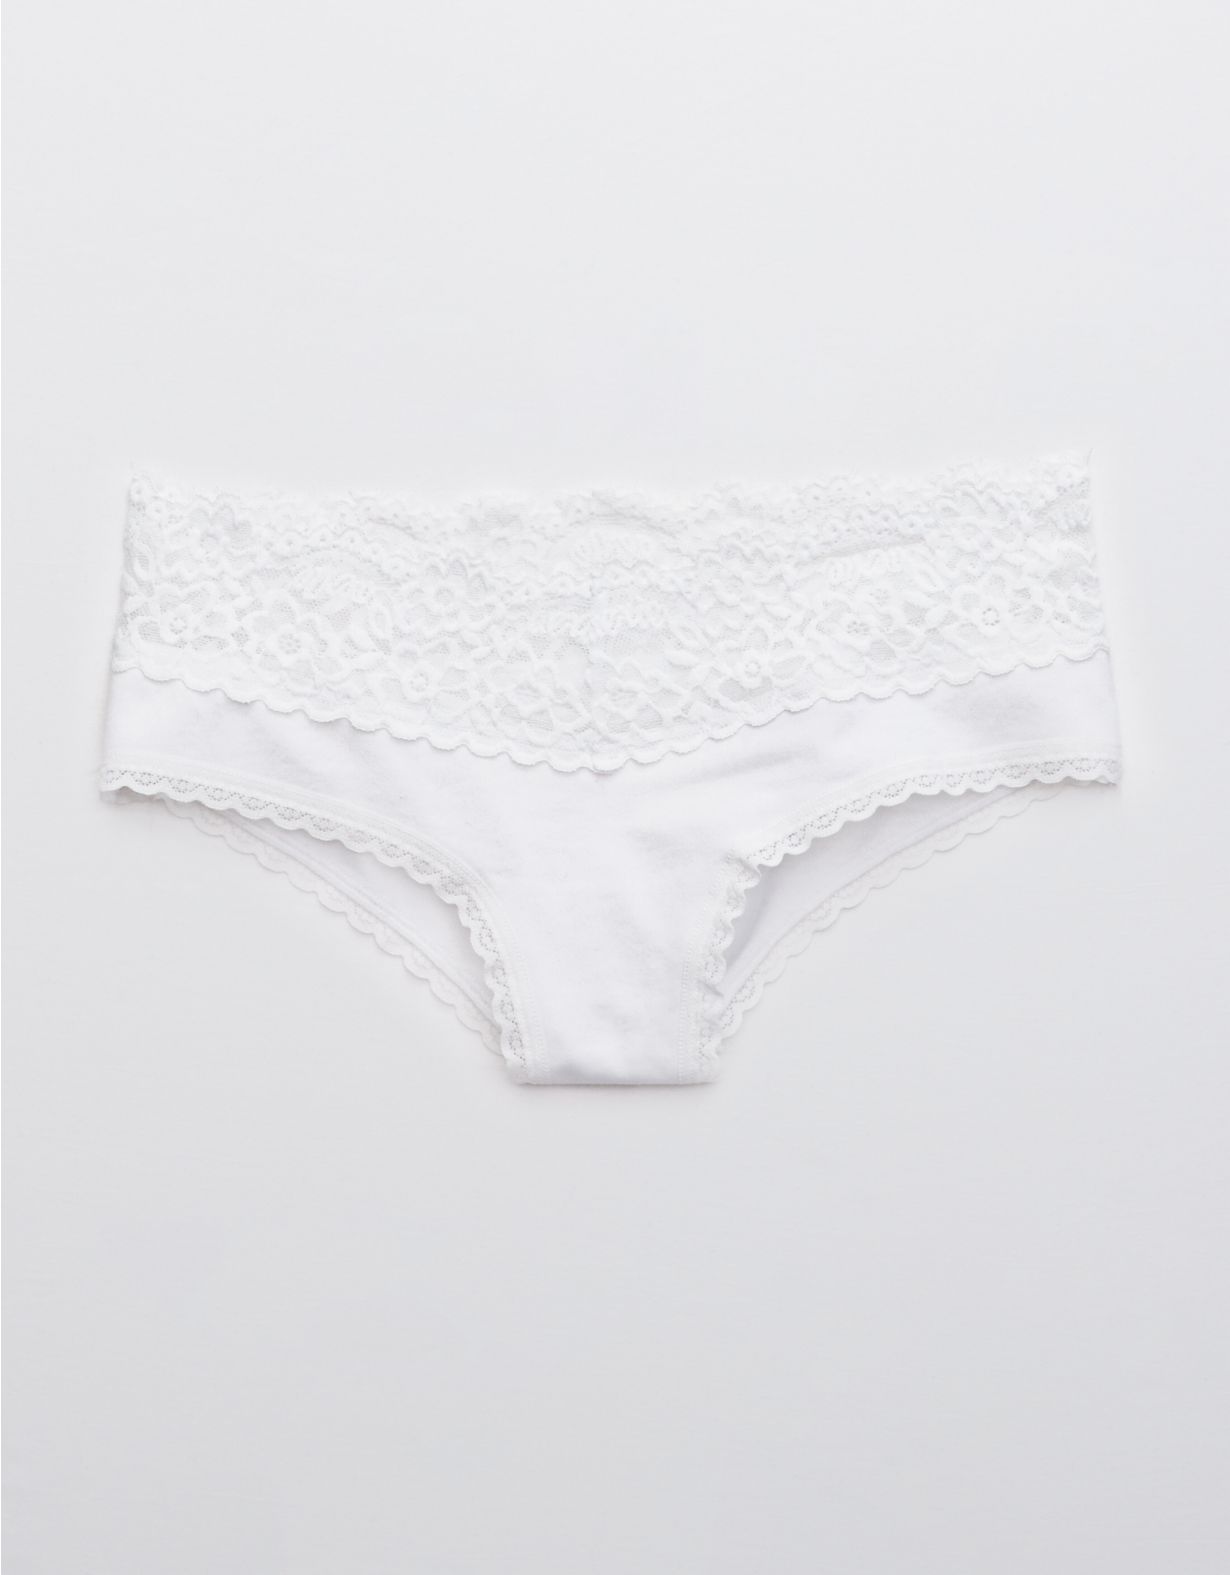 Aerie Cotton Eyelash Lace Cheeky Underwear